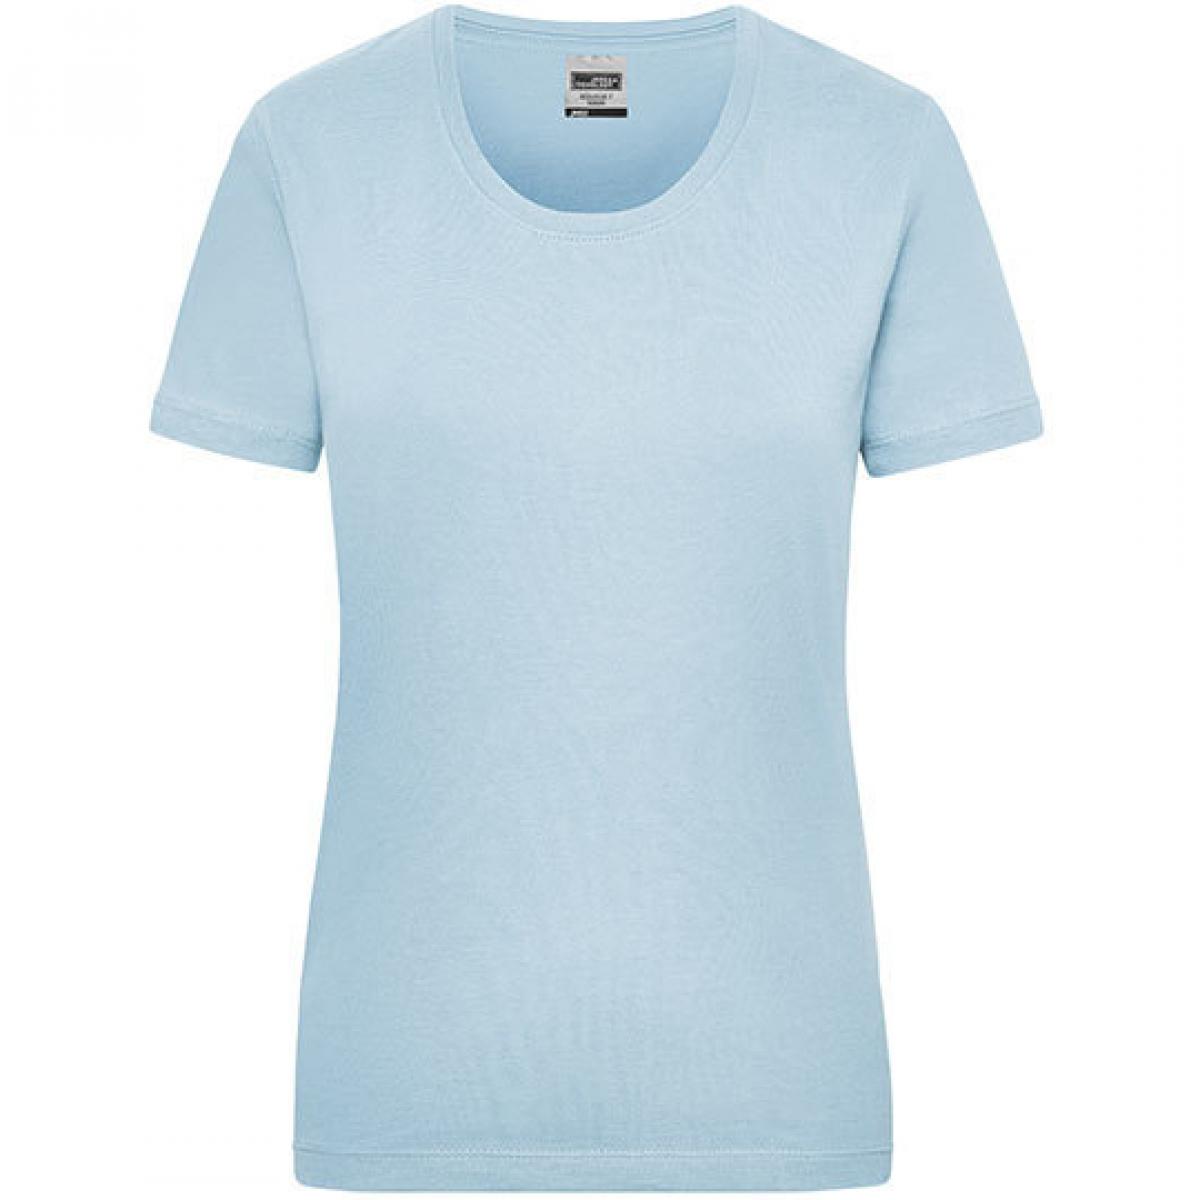 Hersteller: James+Nicholson Herstellernummer: JN 802 Artikelbezeichnung: Workwear-T Women Damen T-Shirt Farbe: Light Blue